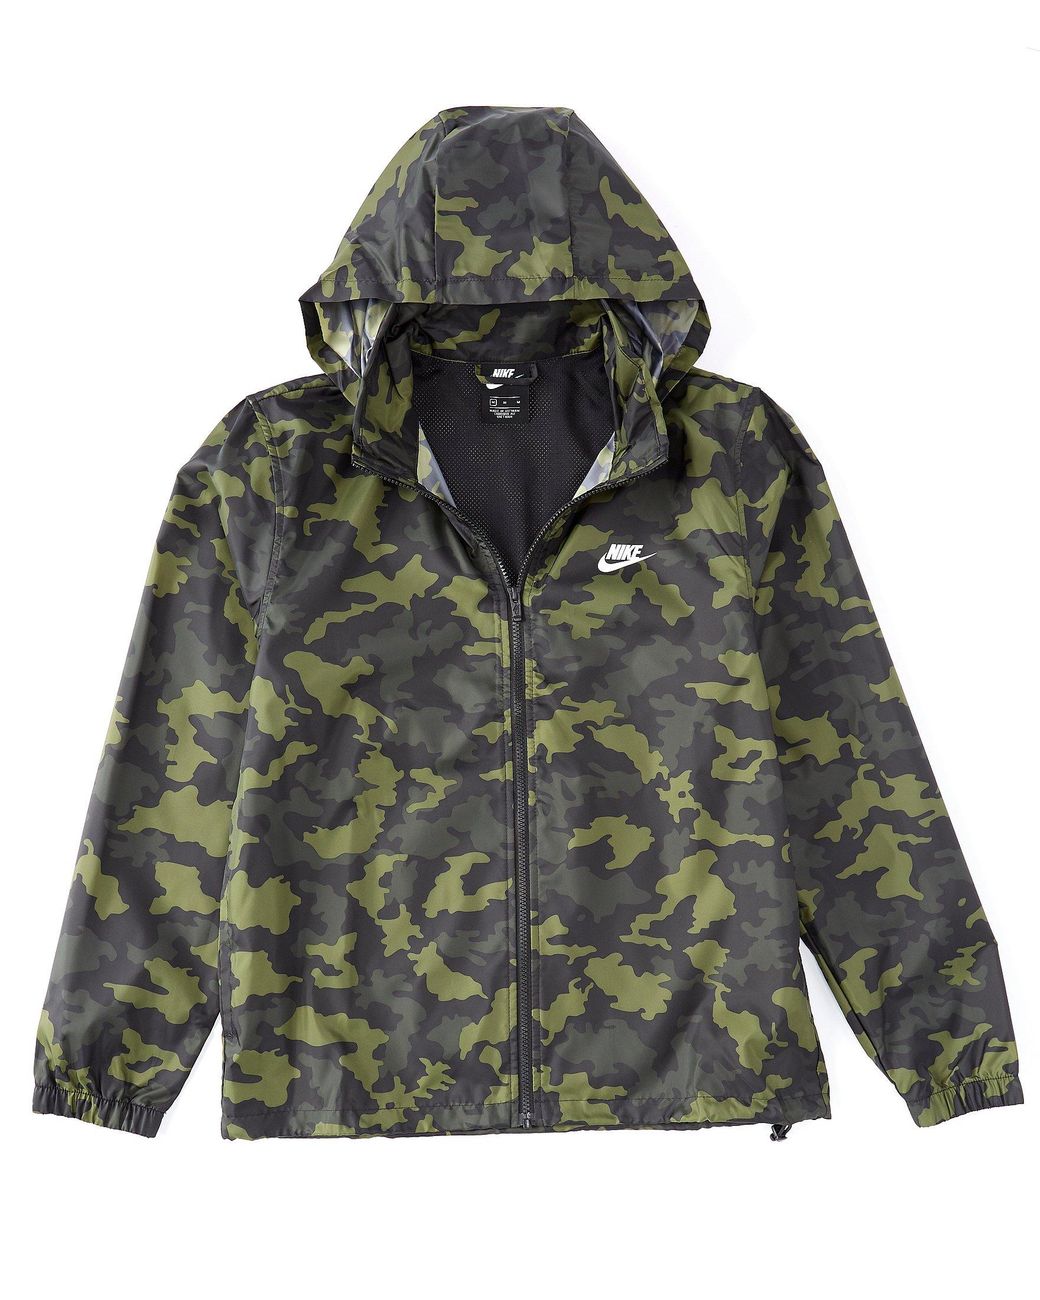 Nike Sportswear Men's Hooded Camo Jacket in Green for Men - Save 34% - Lyst